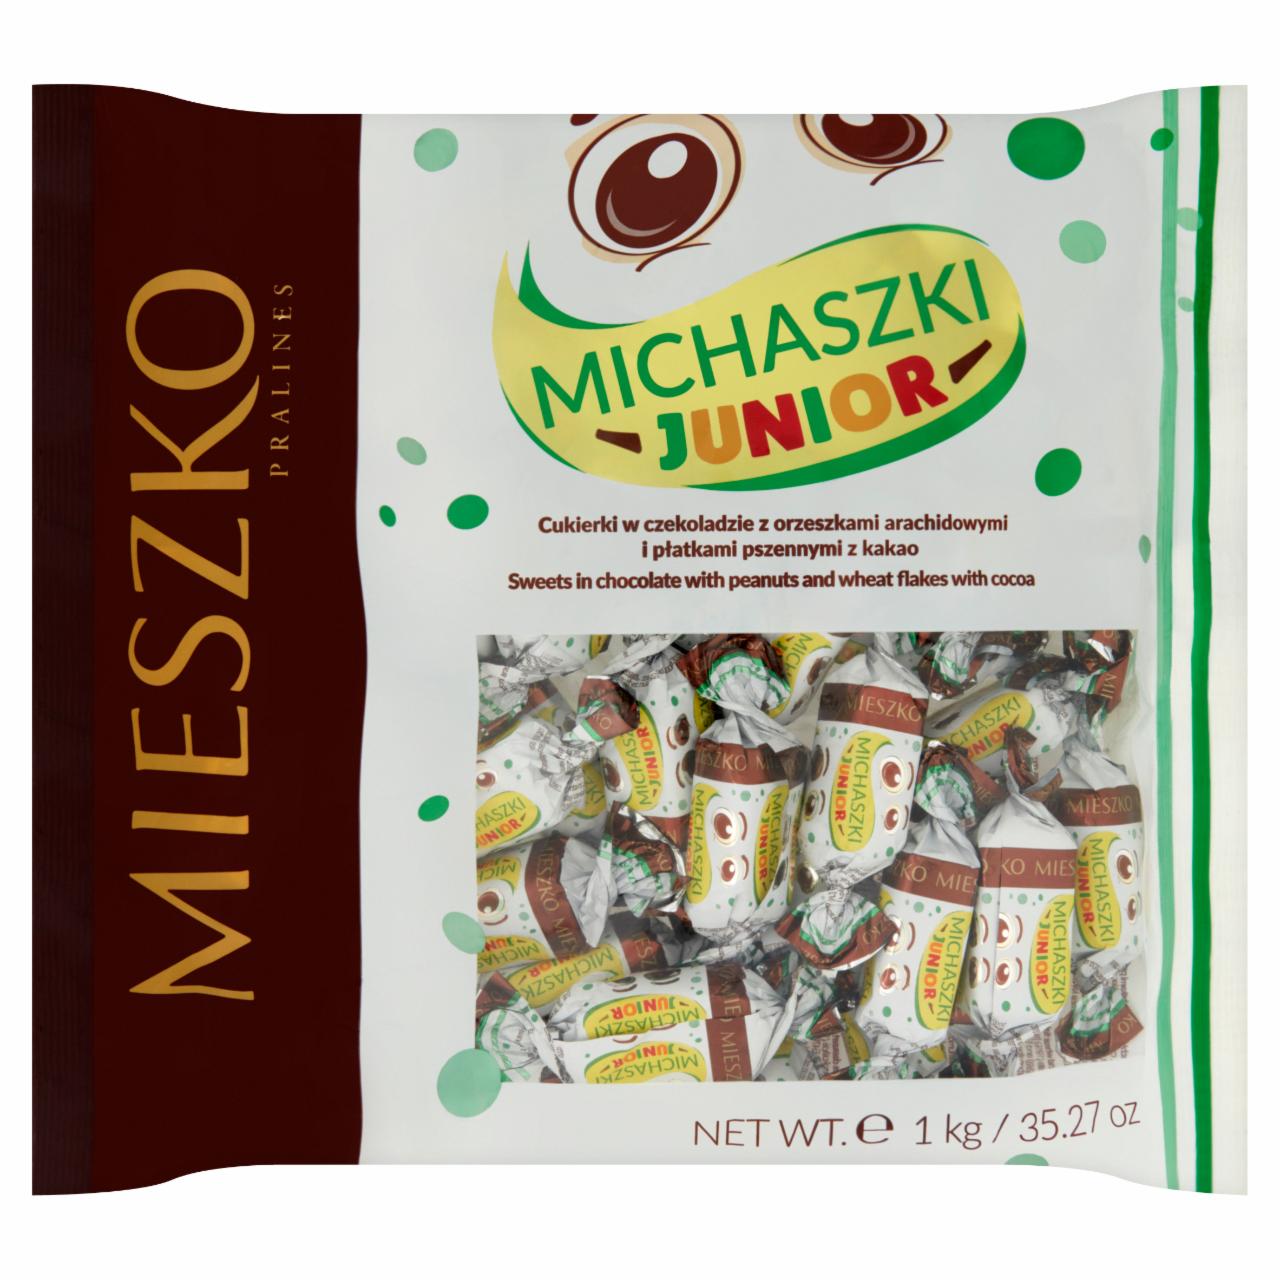 Zdjęcia - Mieszko Michaszki Junior Cukierki w czekoladzie z orzeszkami arachidowymi i płatkami kakaowymi 1 kg